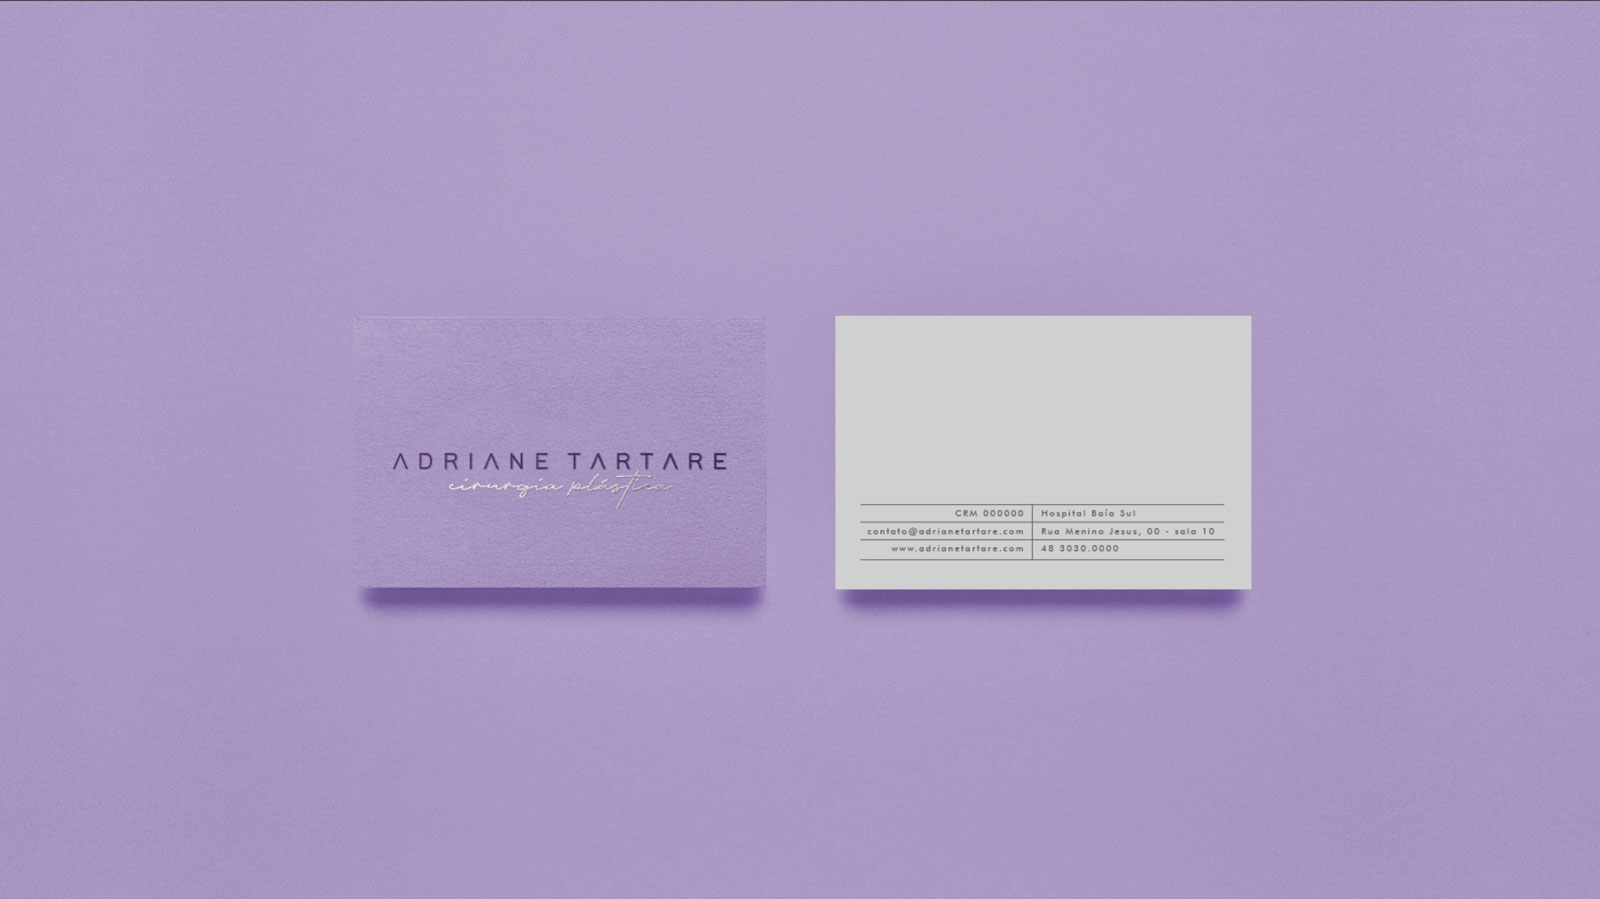 Galeria Adriane Tartare